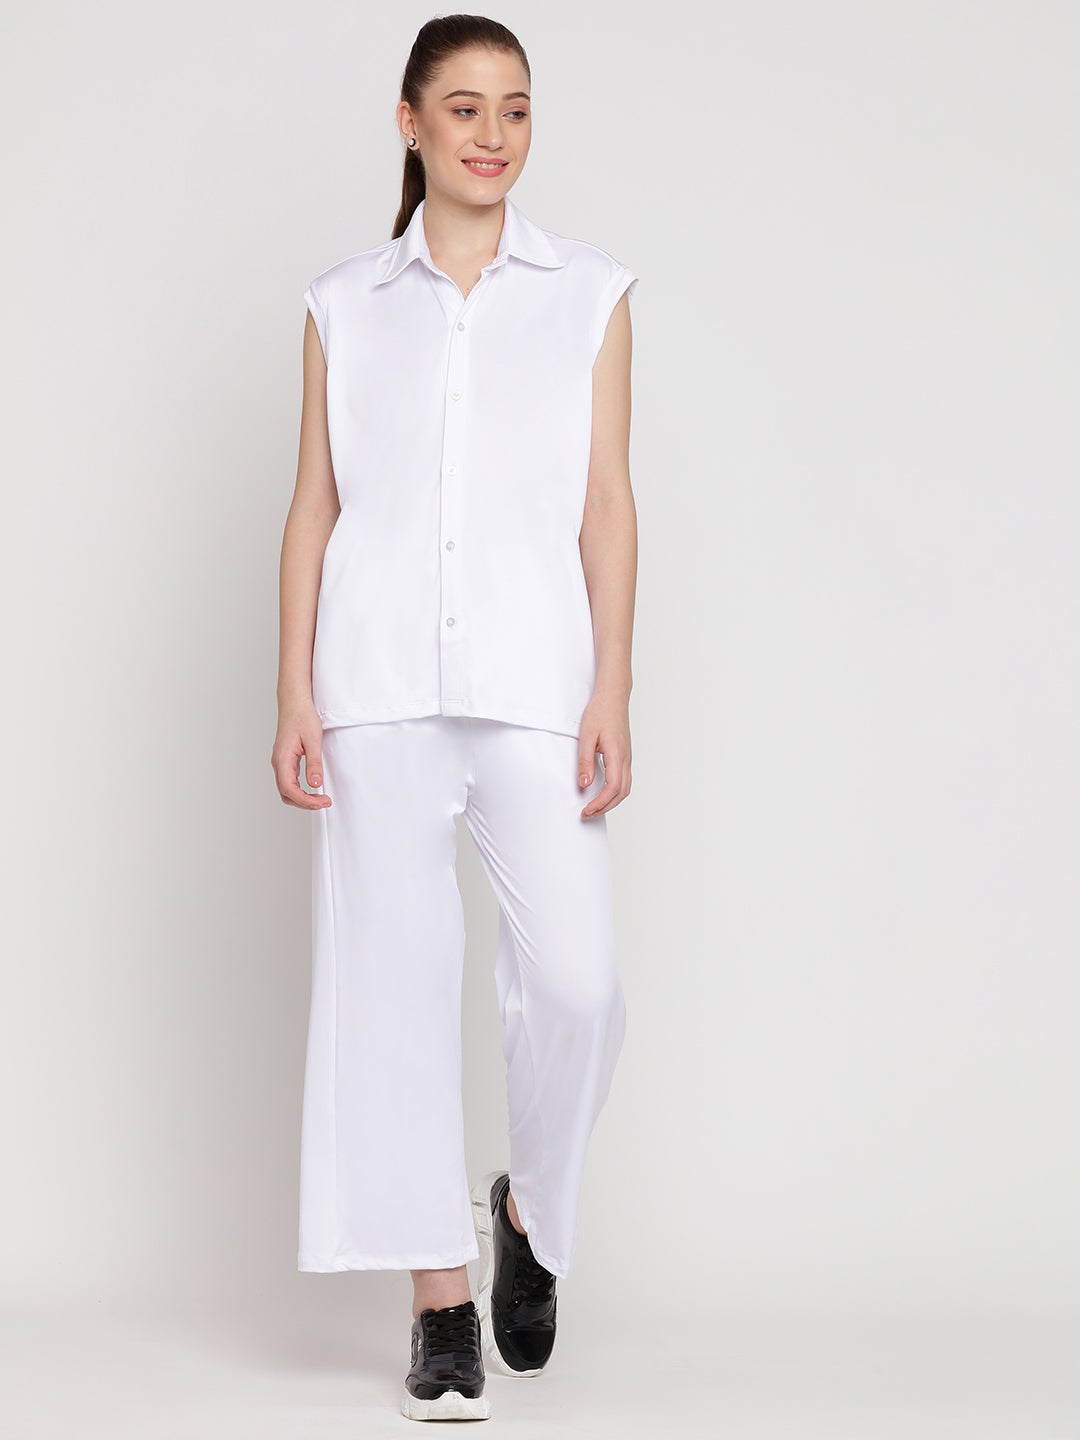 Zen Flow Pants & Shirt Set - White